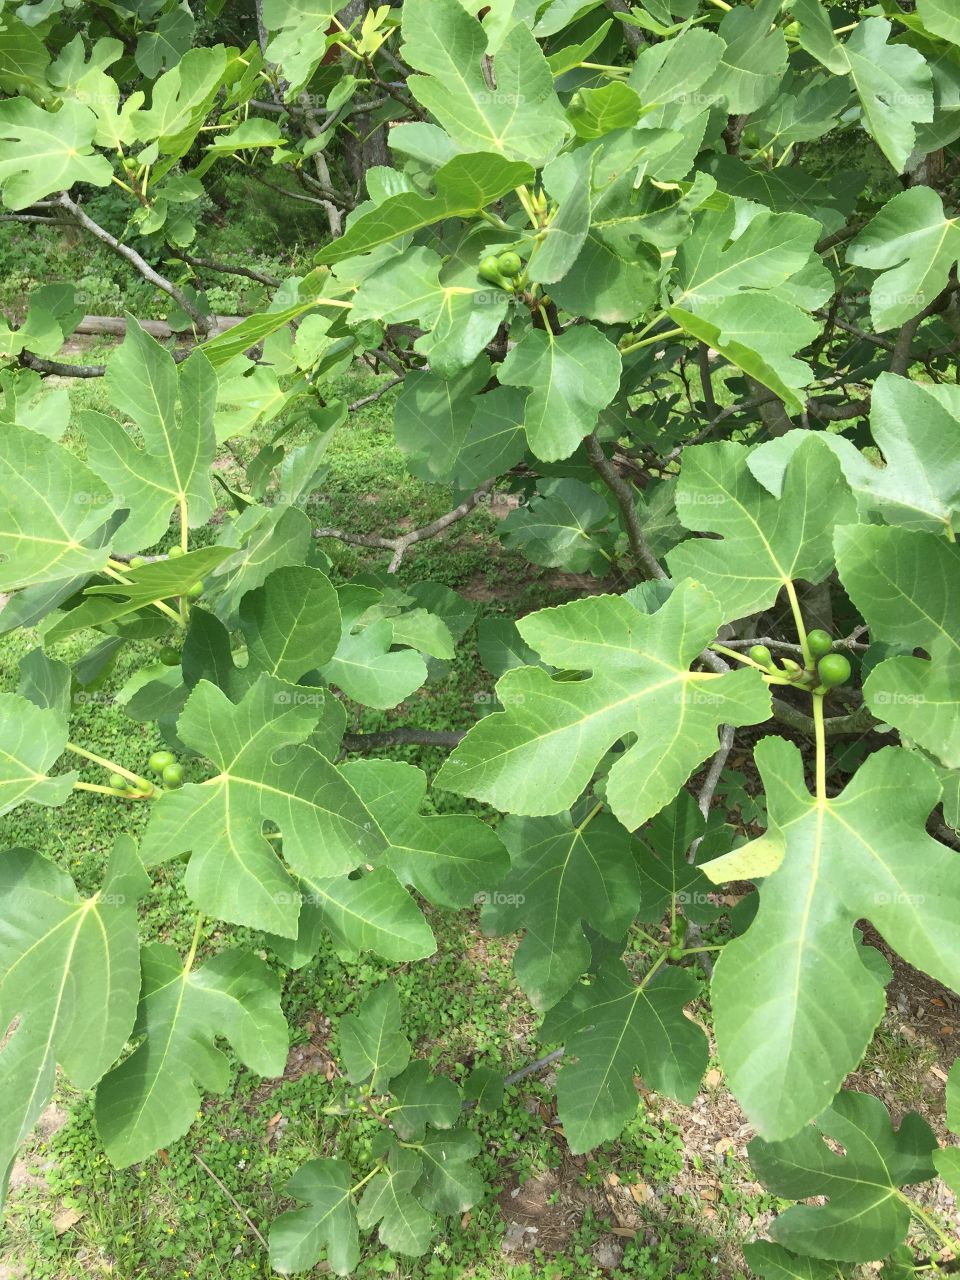 Immature figs on tree